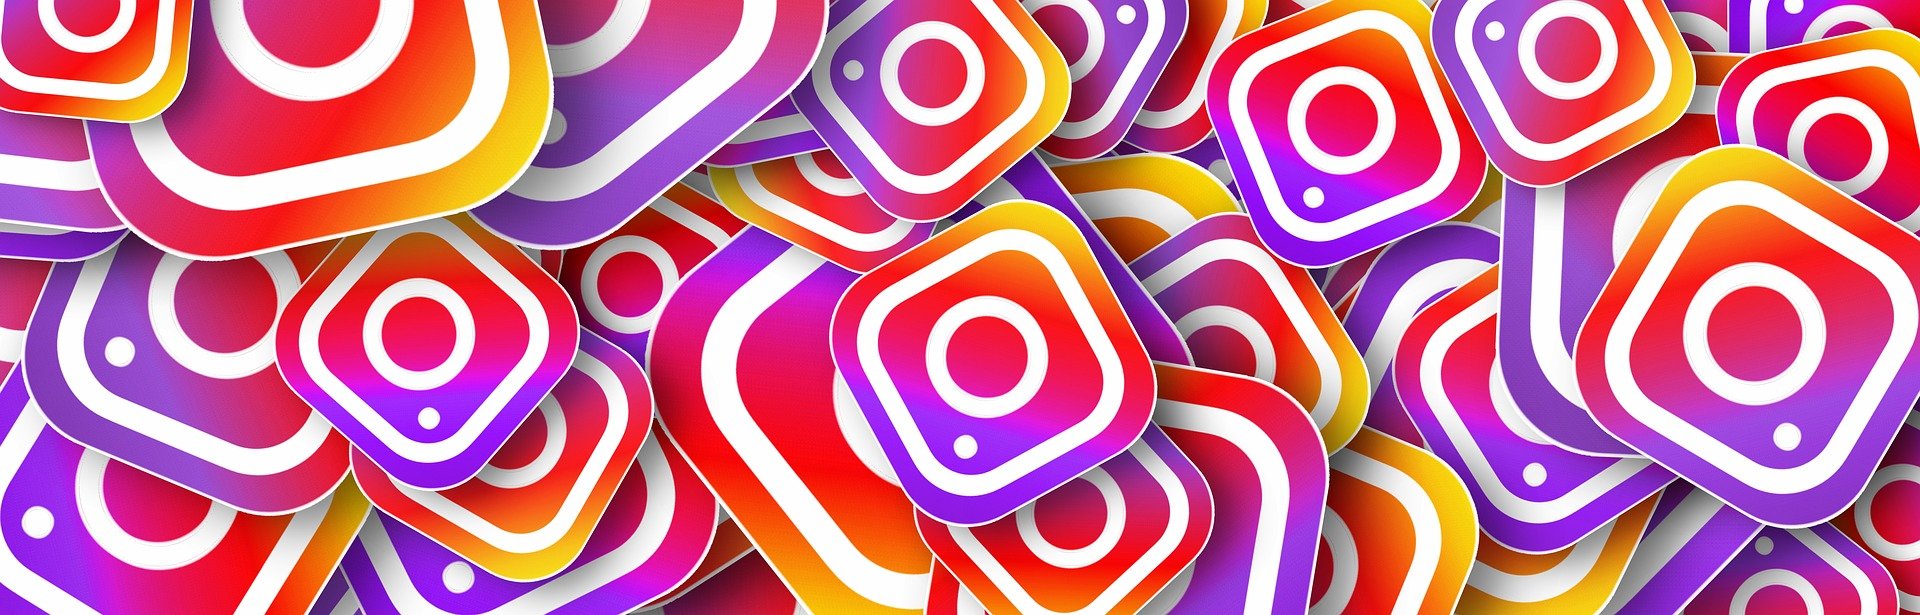 Nutze Instagram effektiv für deinen Sprotverein!